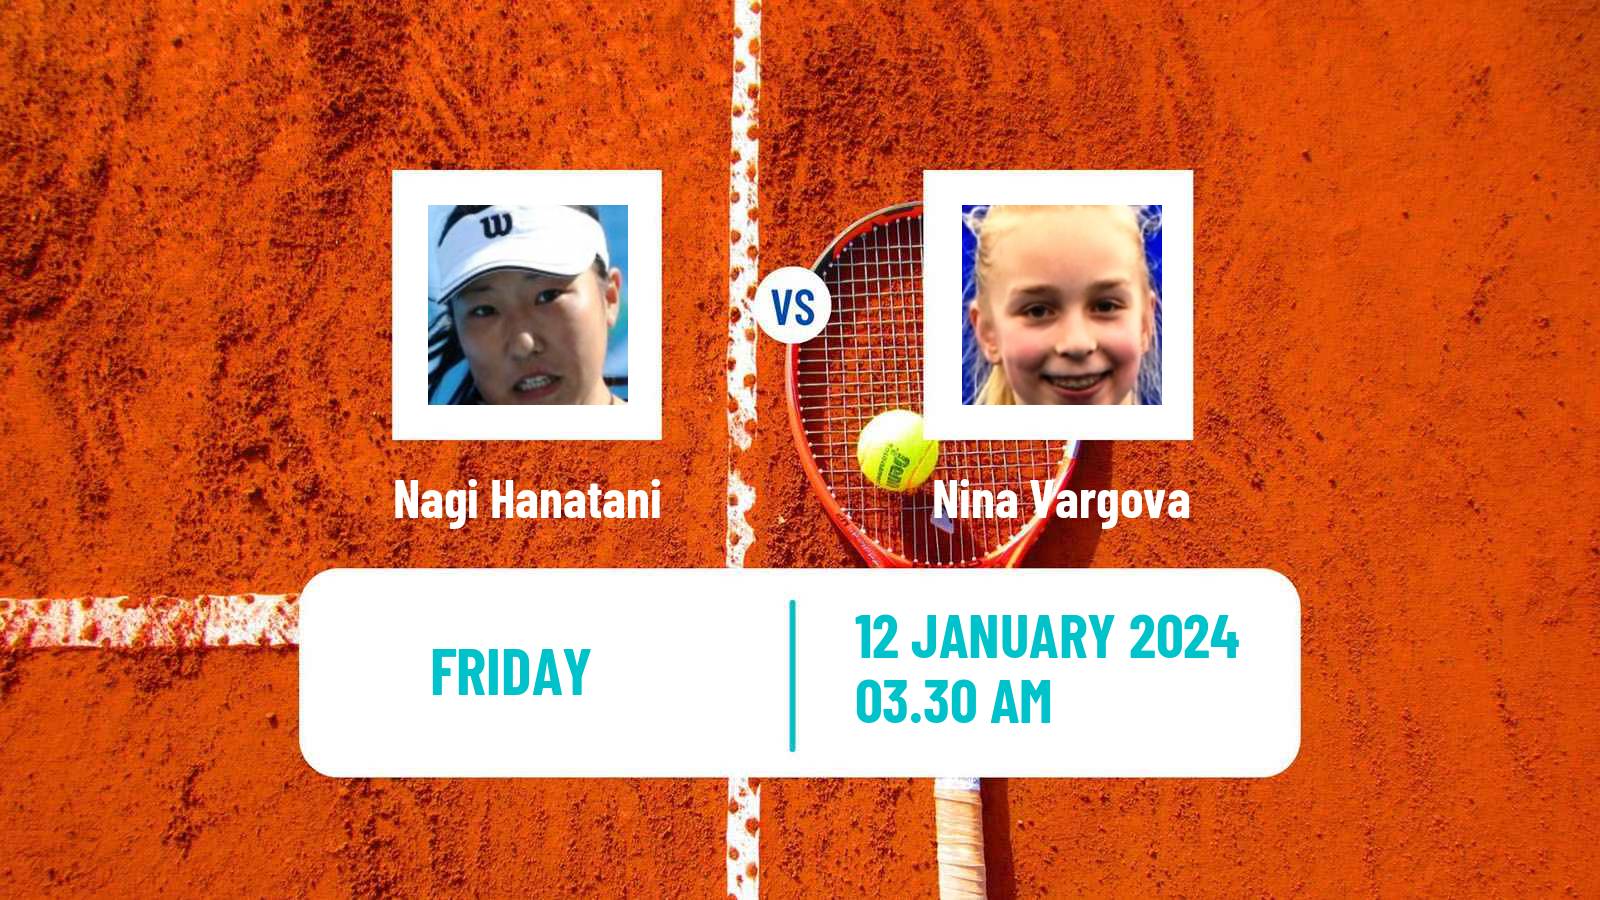 Tennis ITF W15 Monastir 2 Women Nagi Hanatani - Nina Vargova